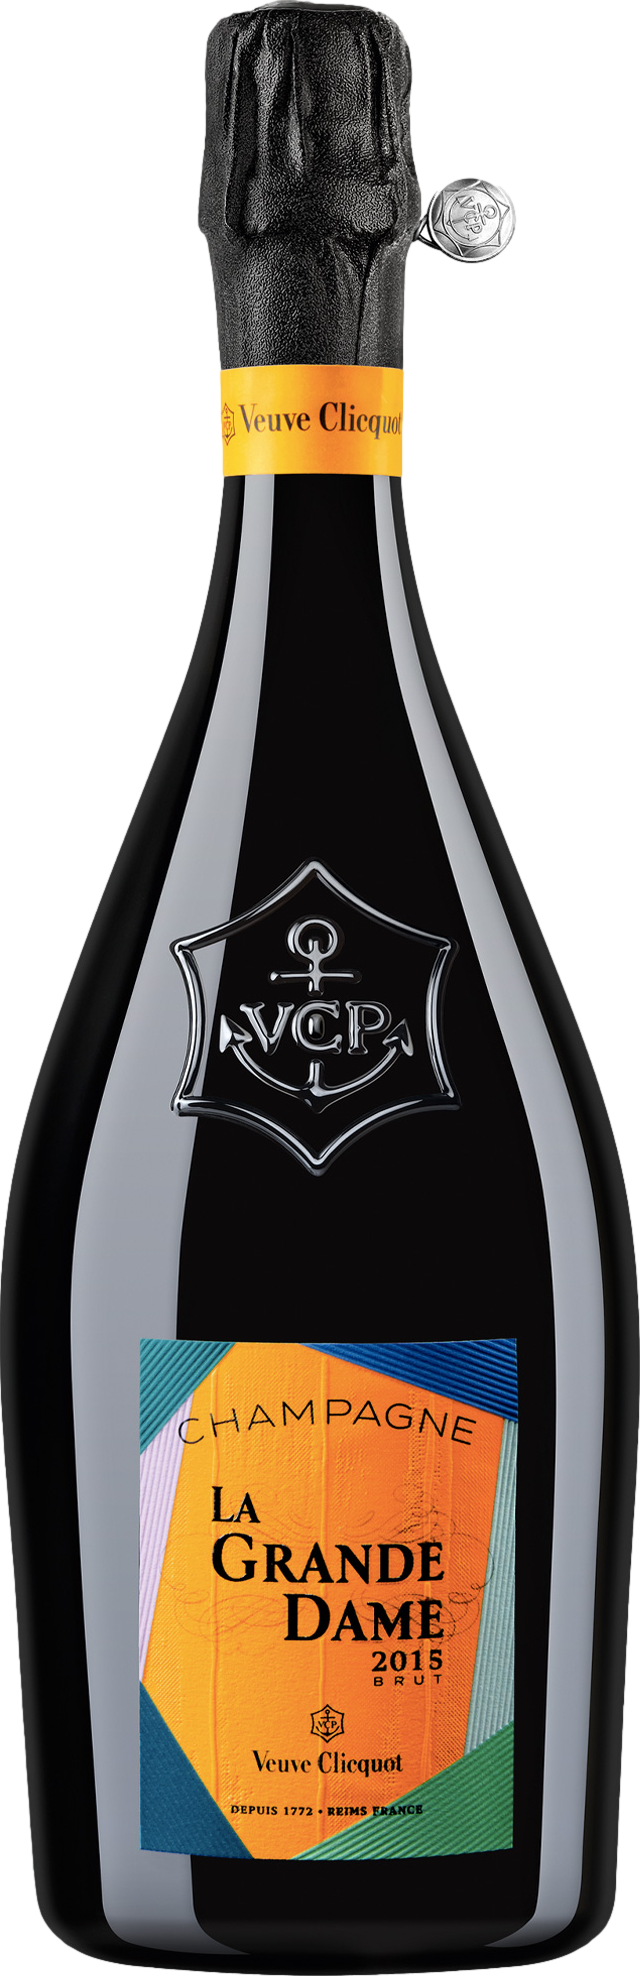 Champagne Veuve Clicquot La Grande Dame Brut 2015 Šumivé 12.5% 0.75 l